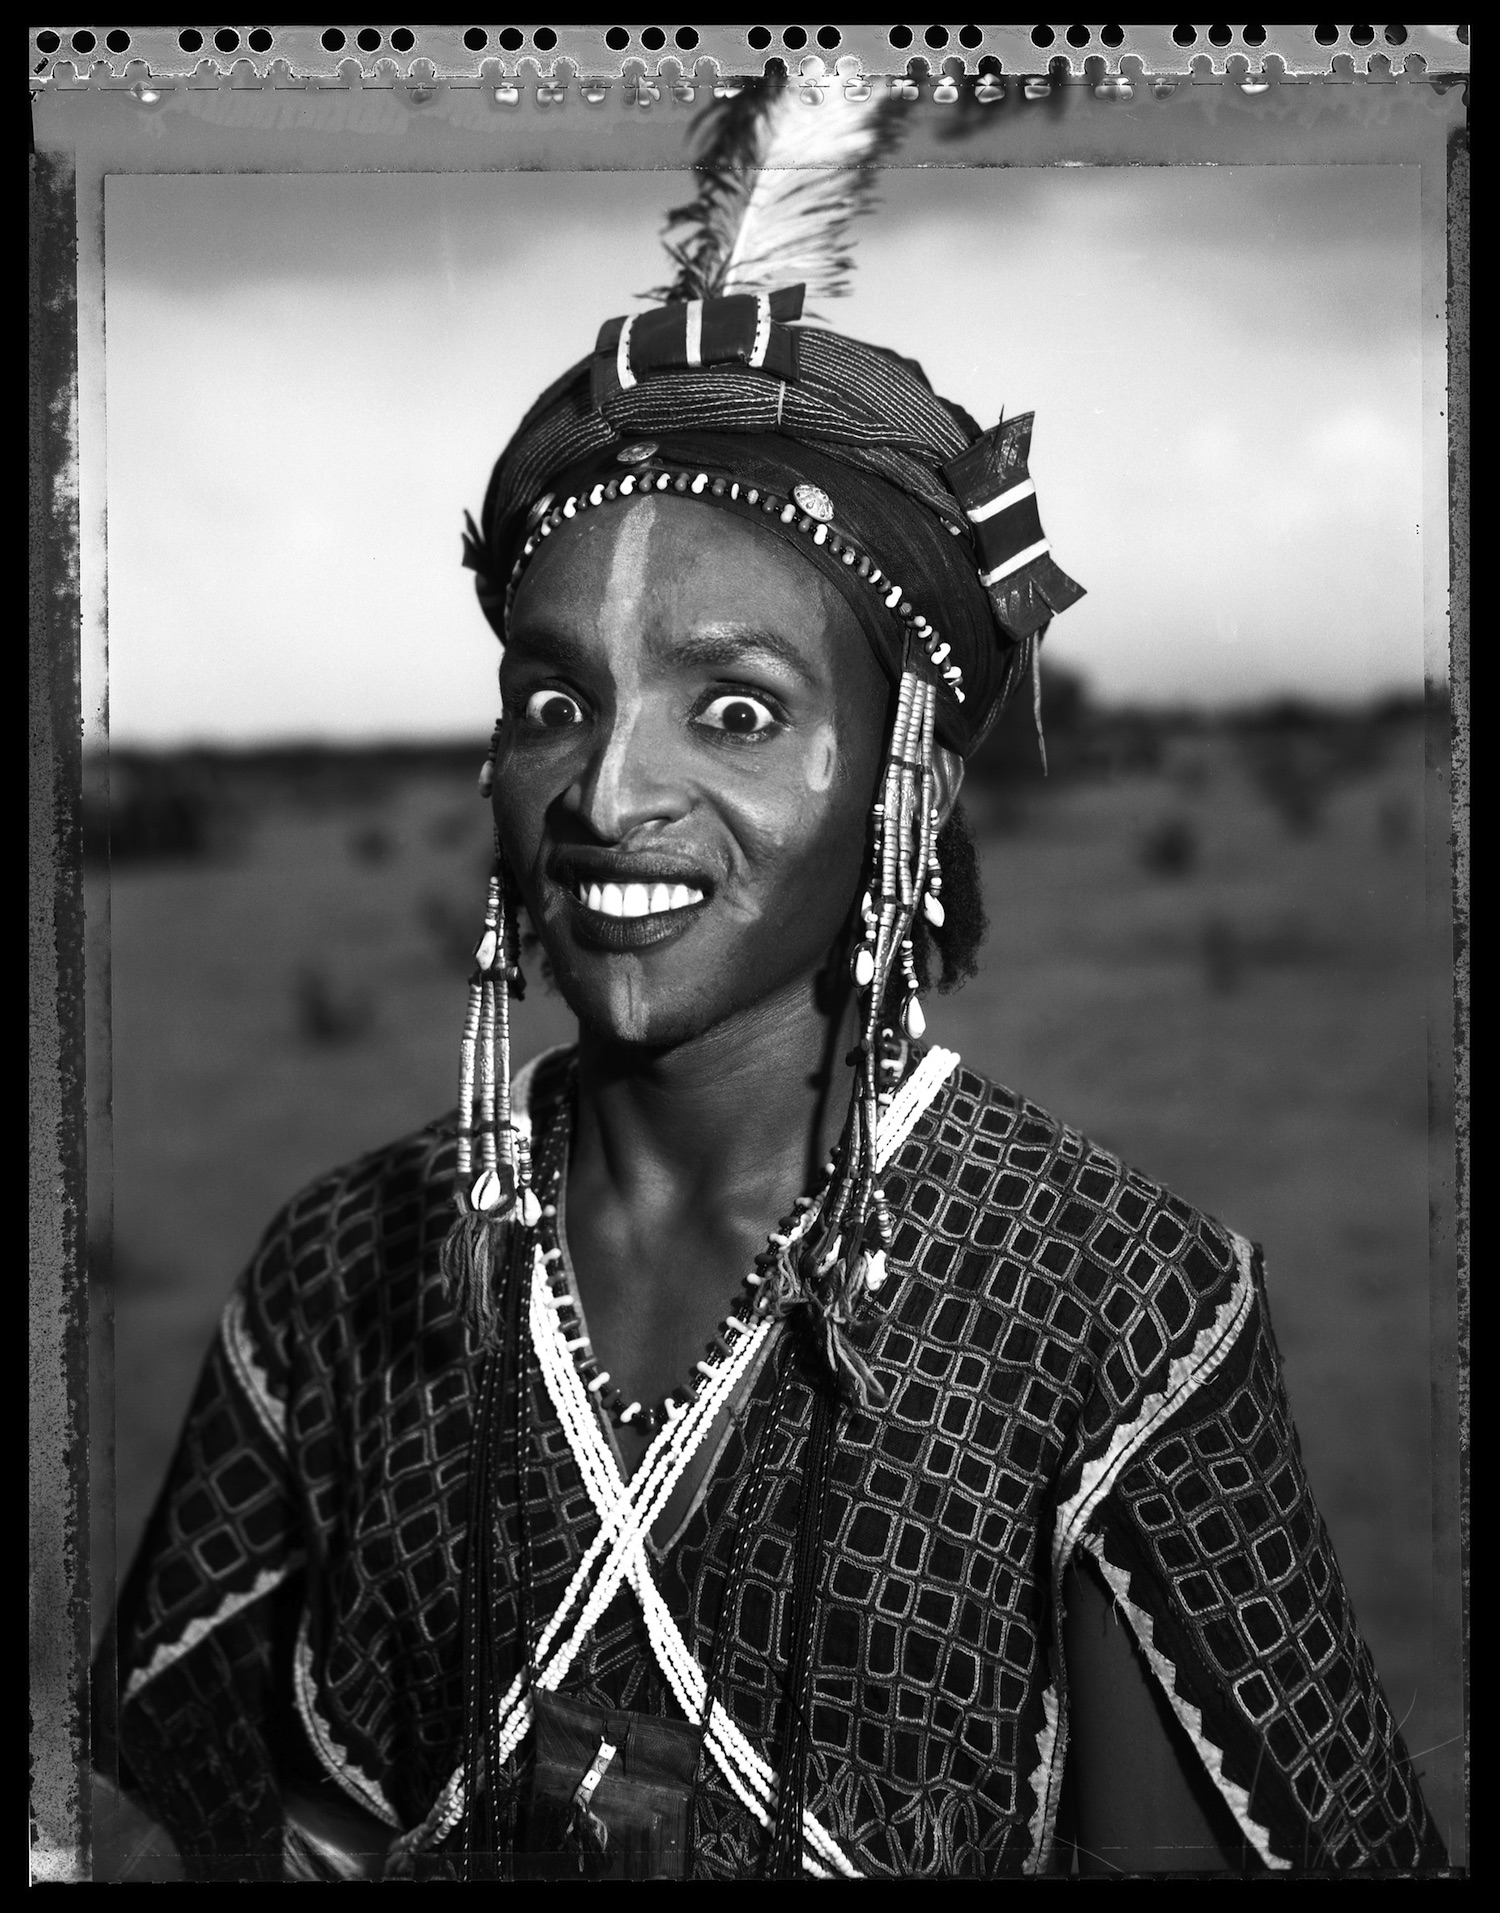 Bouga, ethnie Peuhl Wodaabe, cérémonie Geerewol, Adjangafa, Niger 2006 © Gilles PERRIN